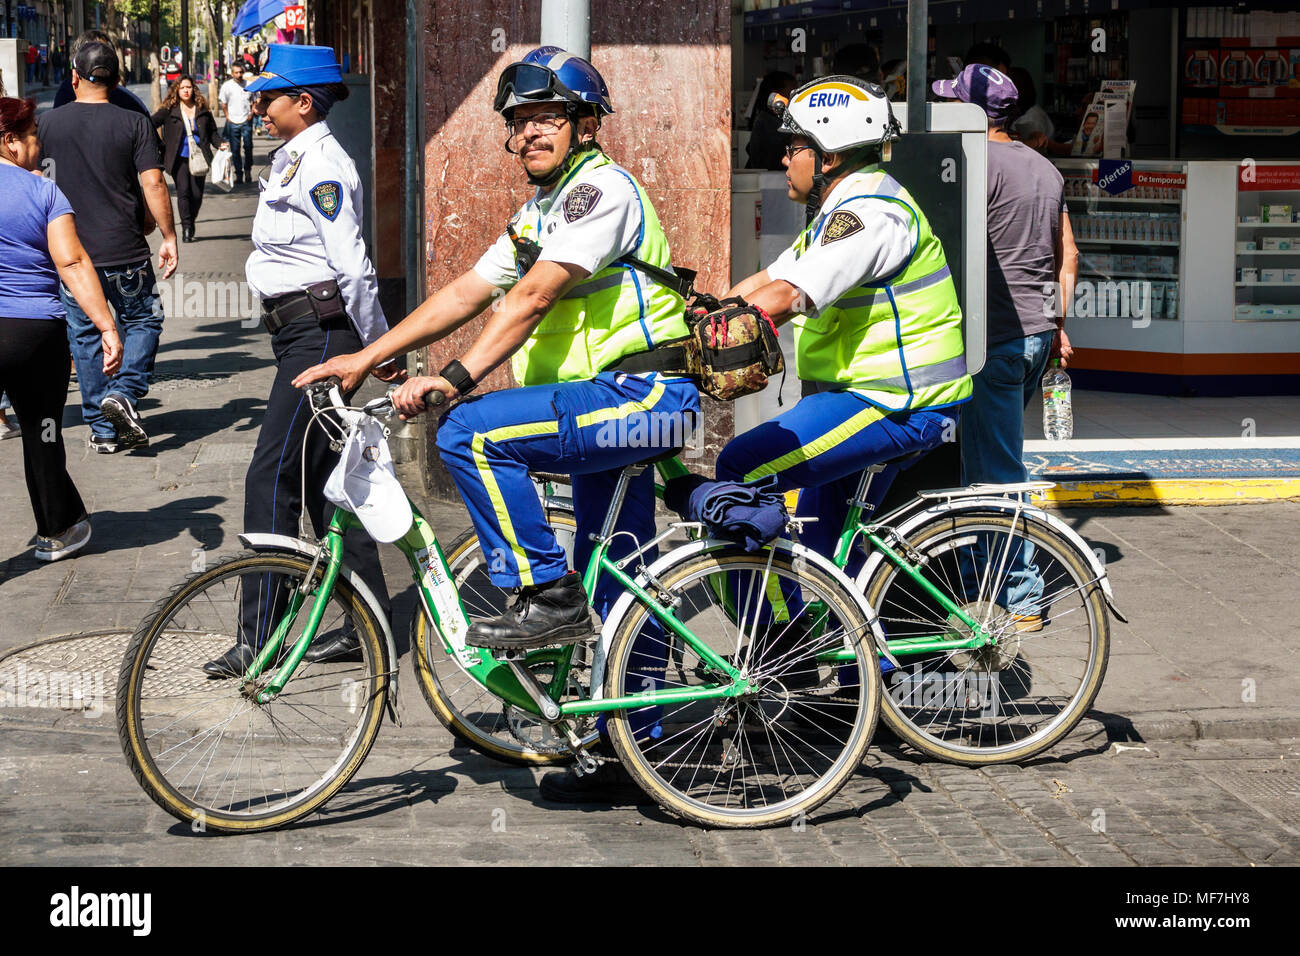 Città del Messico, messicano, ispanico, centro storico, uomo uomini maschio, pattuglia della polizia, biciclette biciclette bicicletta andare in bicicletta rider bike bike bike bikes, pubblico Foto Stock